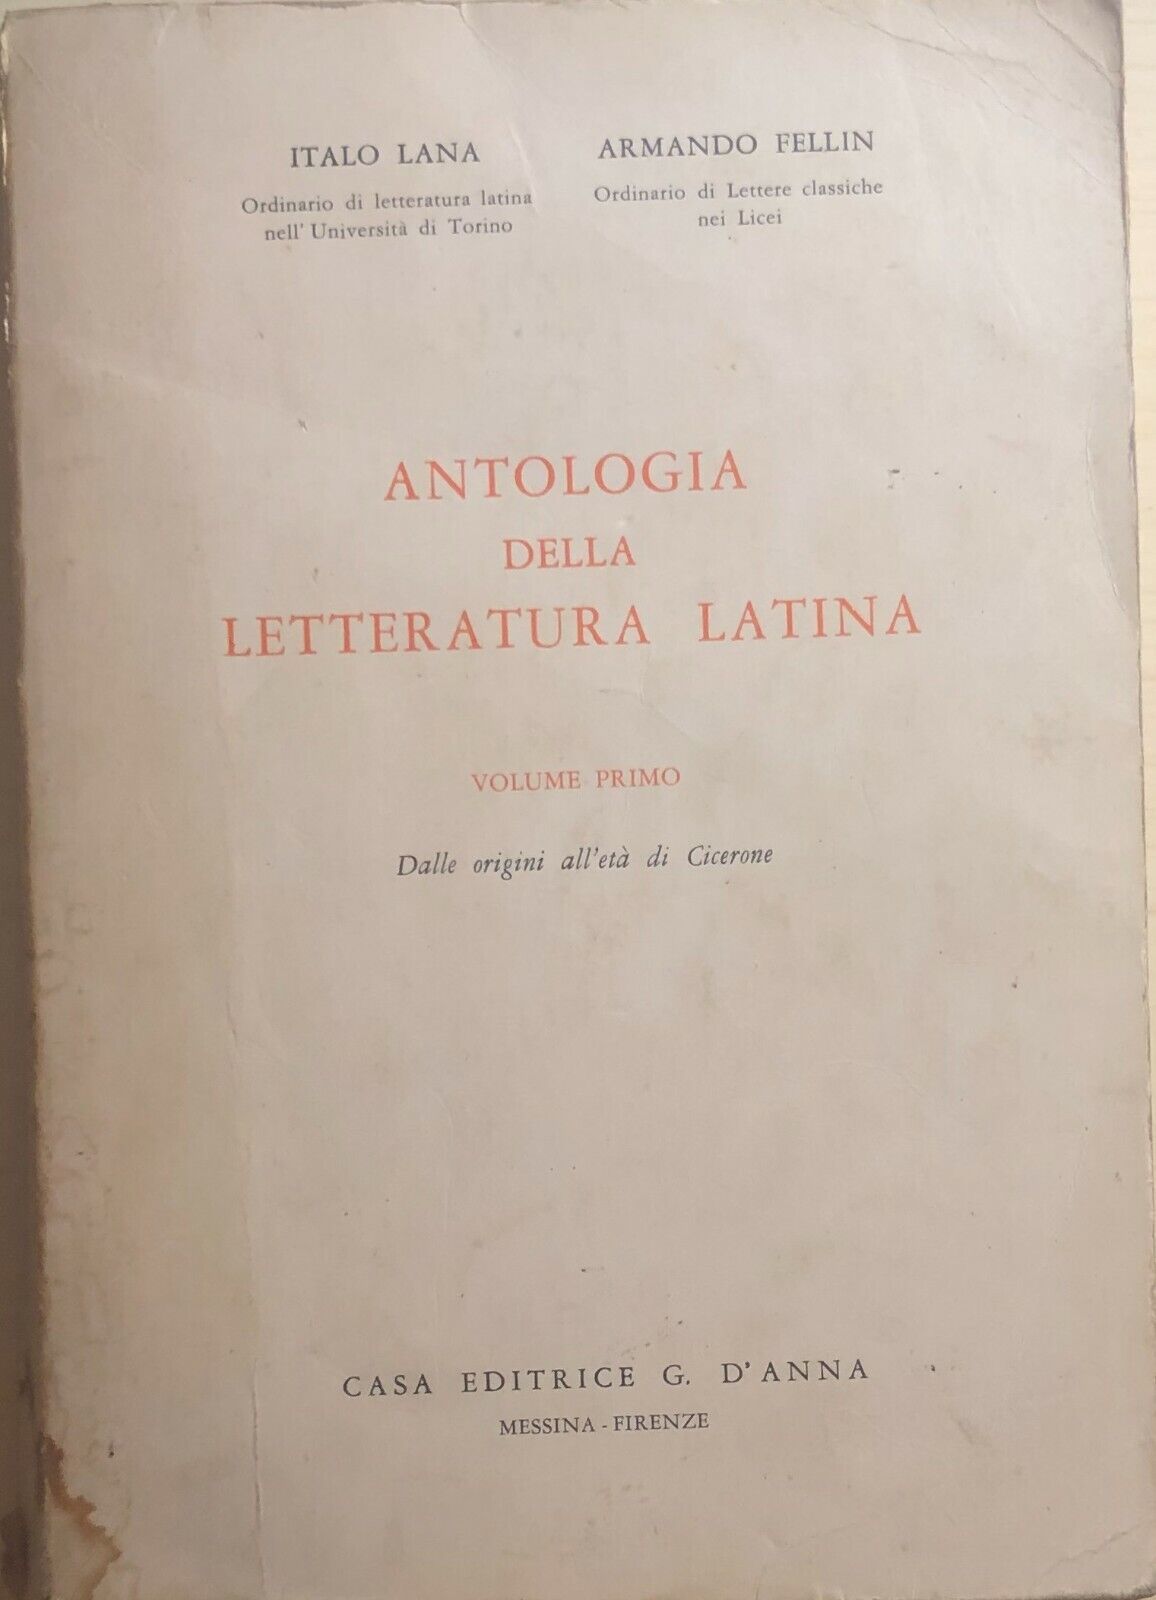 Antologia della letteratura latina Vol. I di Aa.vv., 1966, Casa Editrice d'Anna